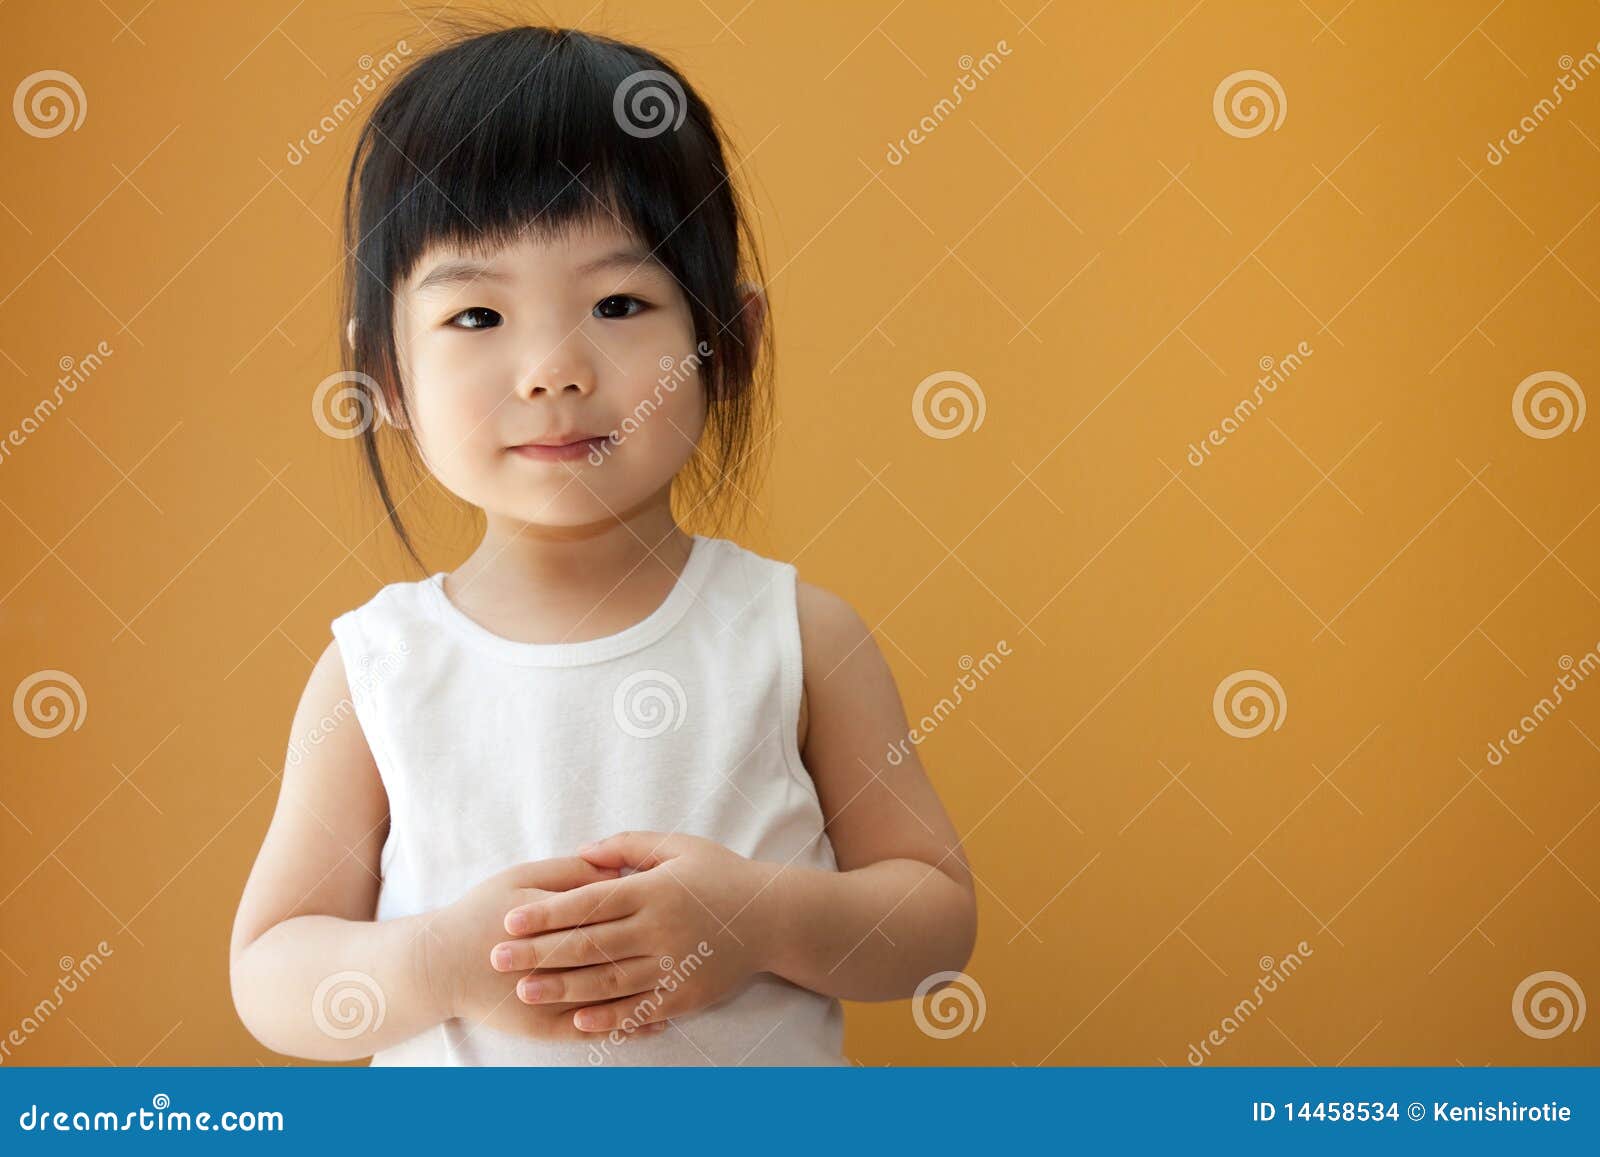 фото маленькой девочки азиатки фото 111